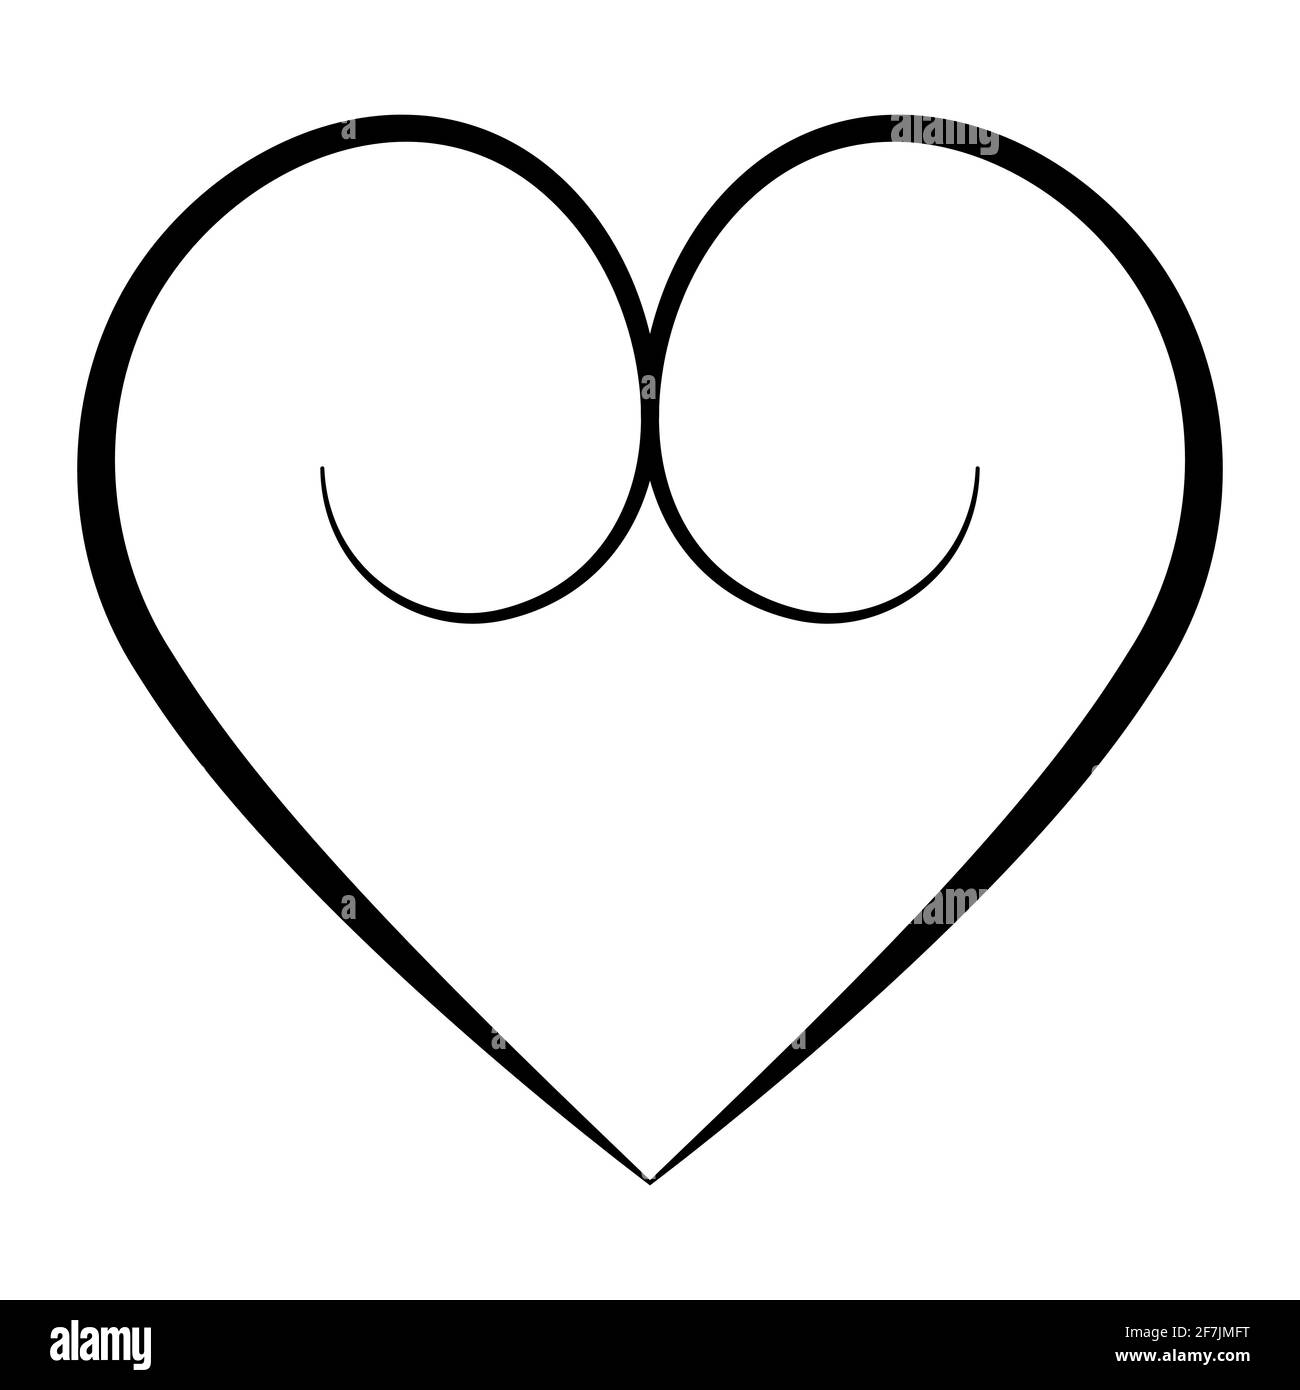 Corazón elegante con contornos caligráficos, glúteos vectoriales forma de corazón con remolinos caligráficos símbolo amor Ilustración del Vector